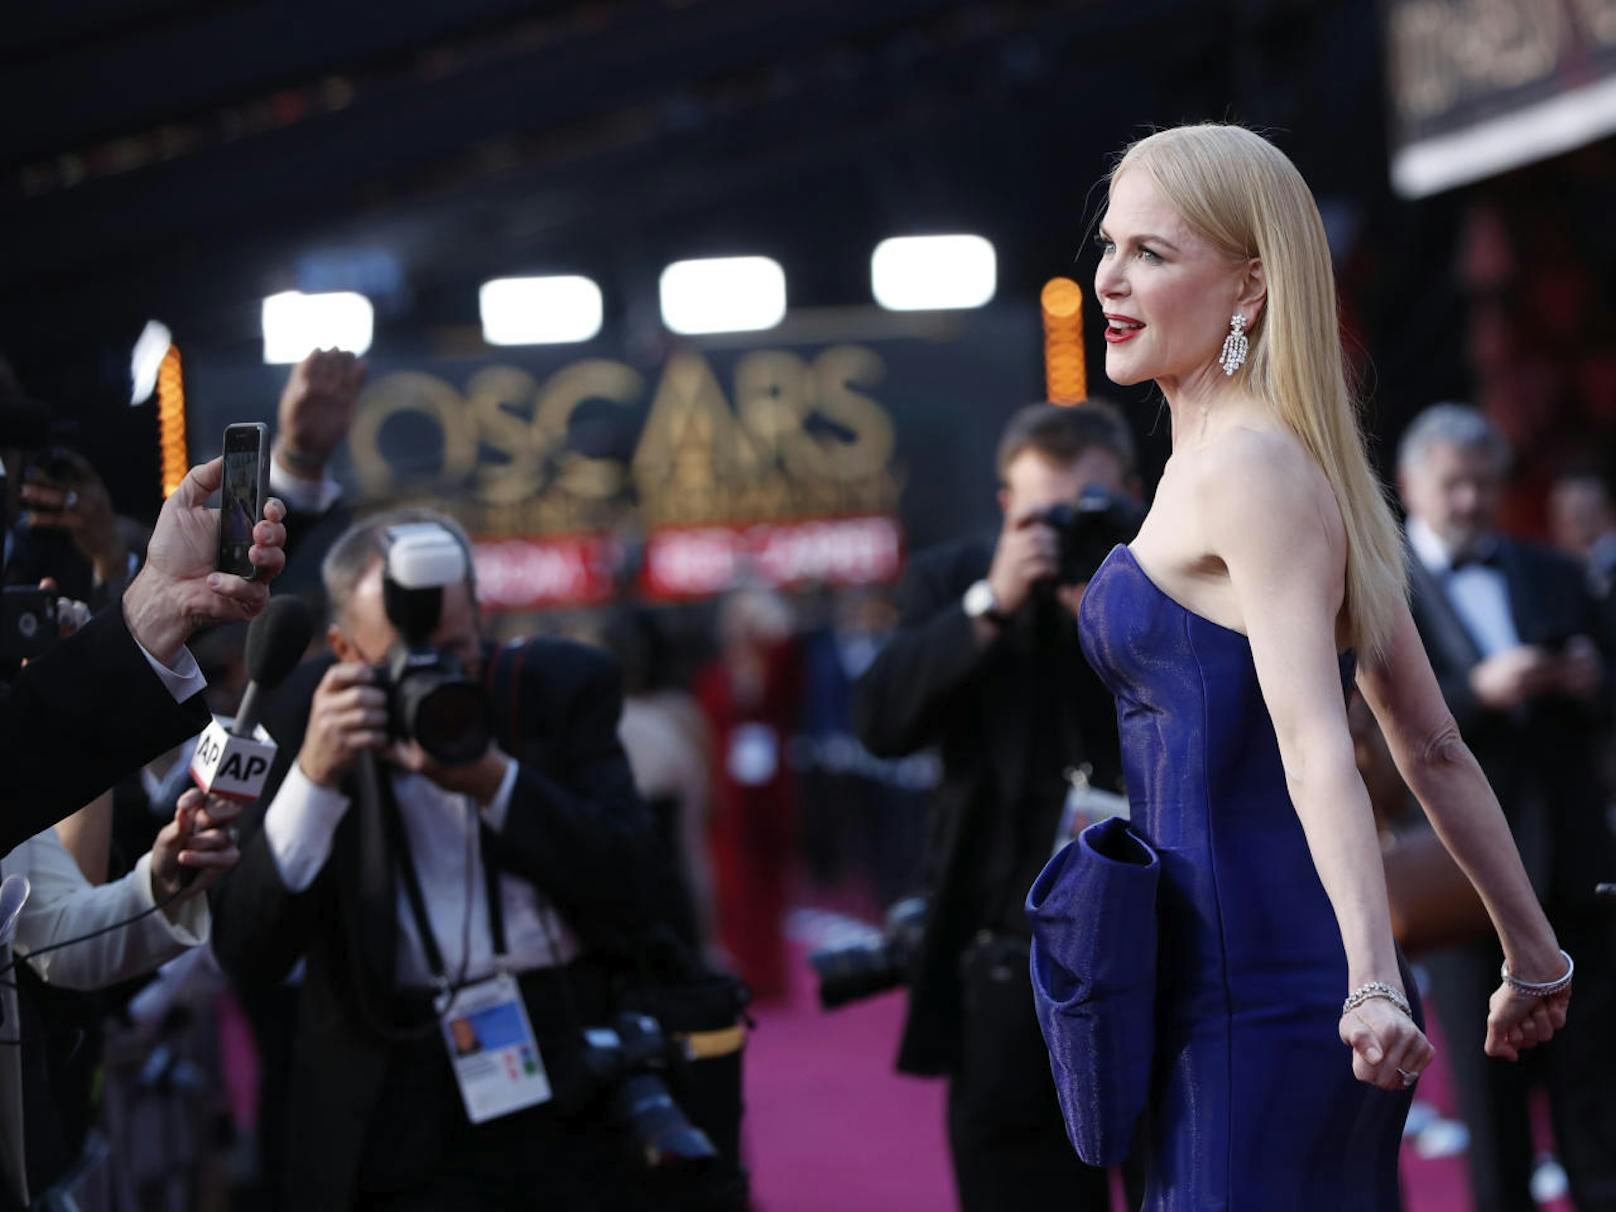 Nicole Kidman ist für ihre Liebe zu Botox bekannt geworden. In den letzten Jahren soll sie es ein wenig reduziert haben.